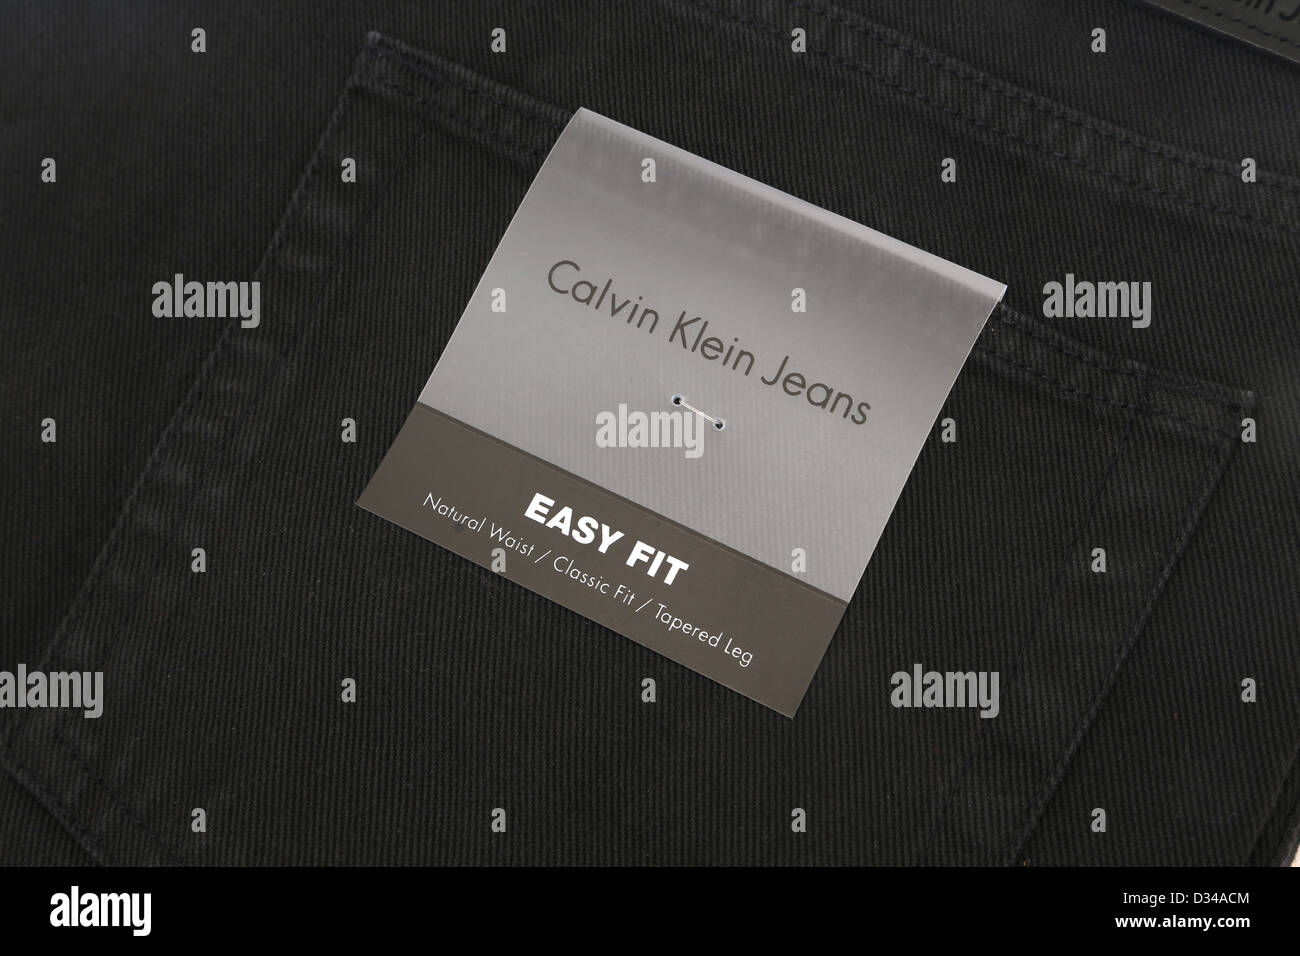 Calvin Klein Jeans Stockfoto